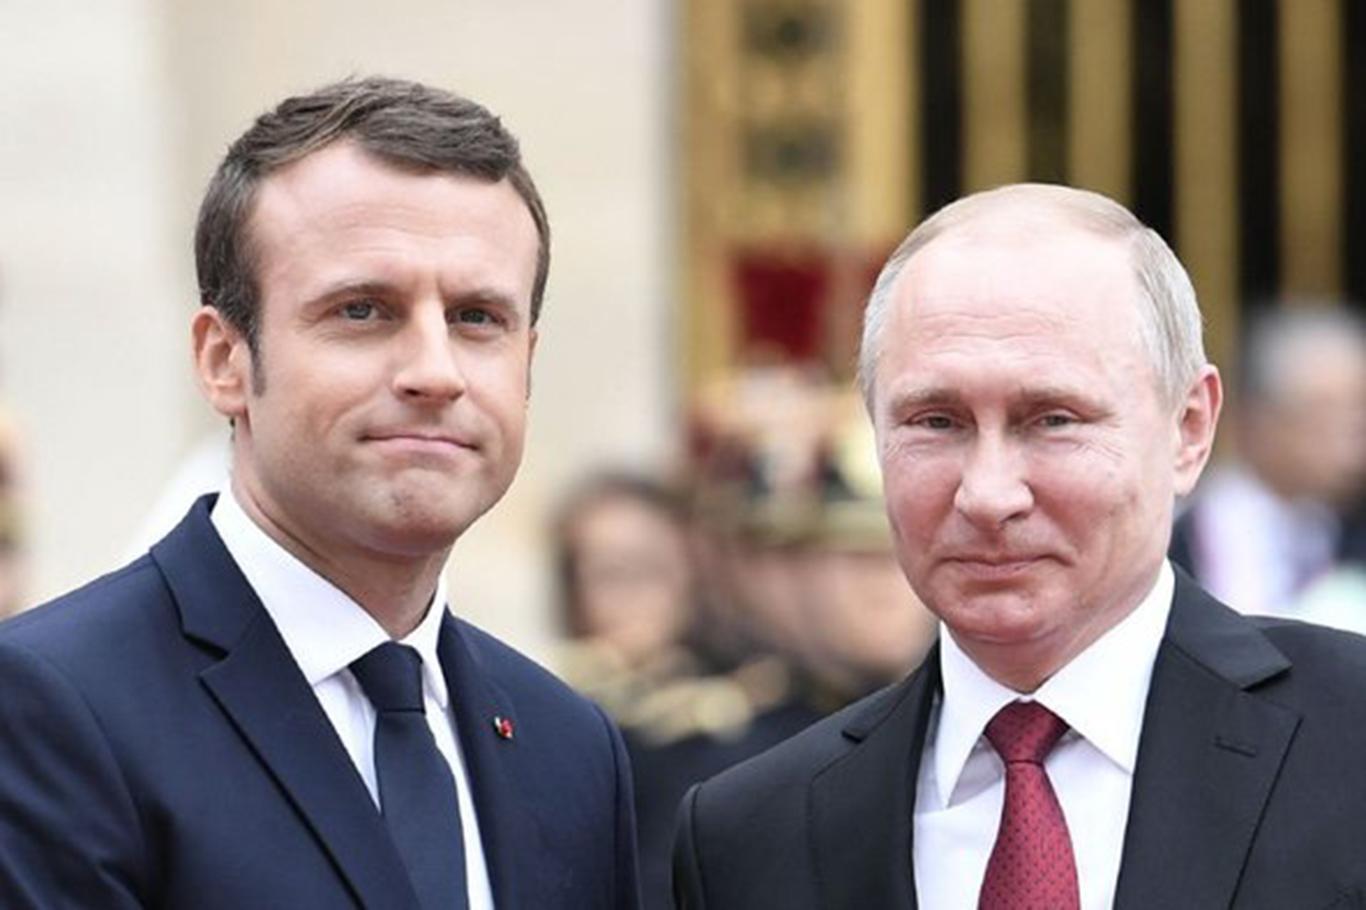 Macron'dan Putin'e 'Suriye'de ateşkes uzatılsın' çağrısı